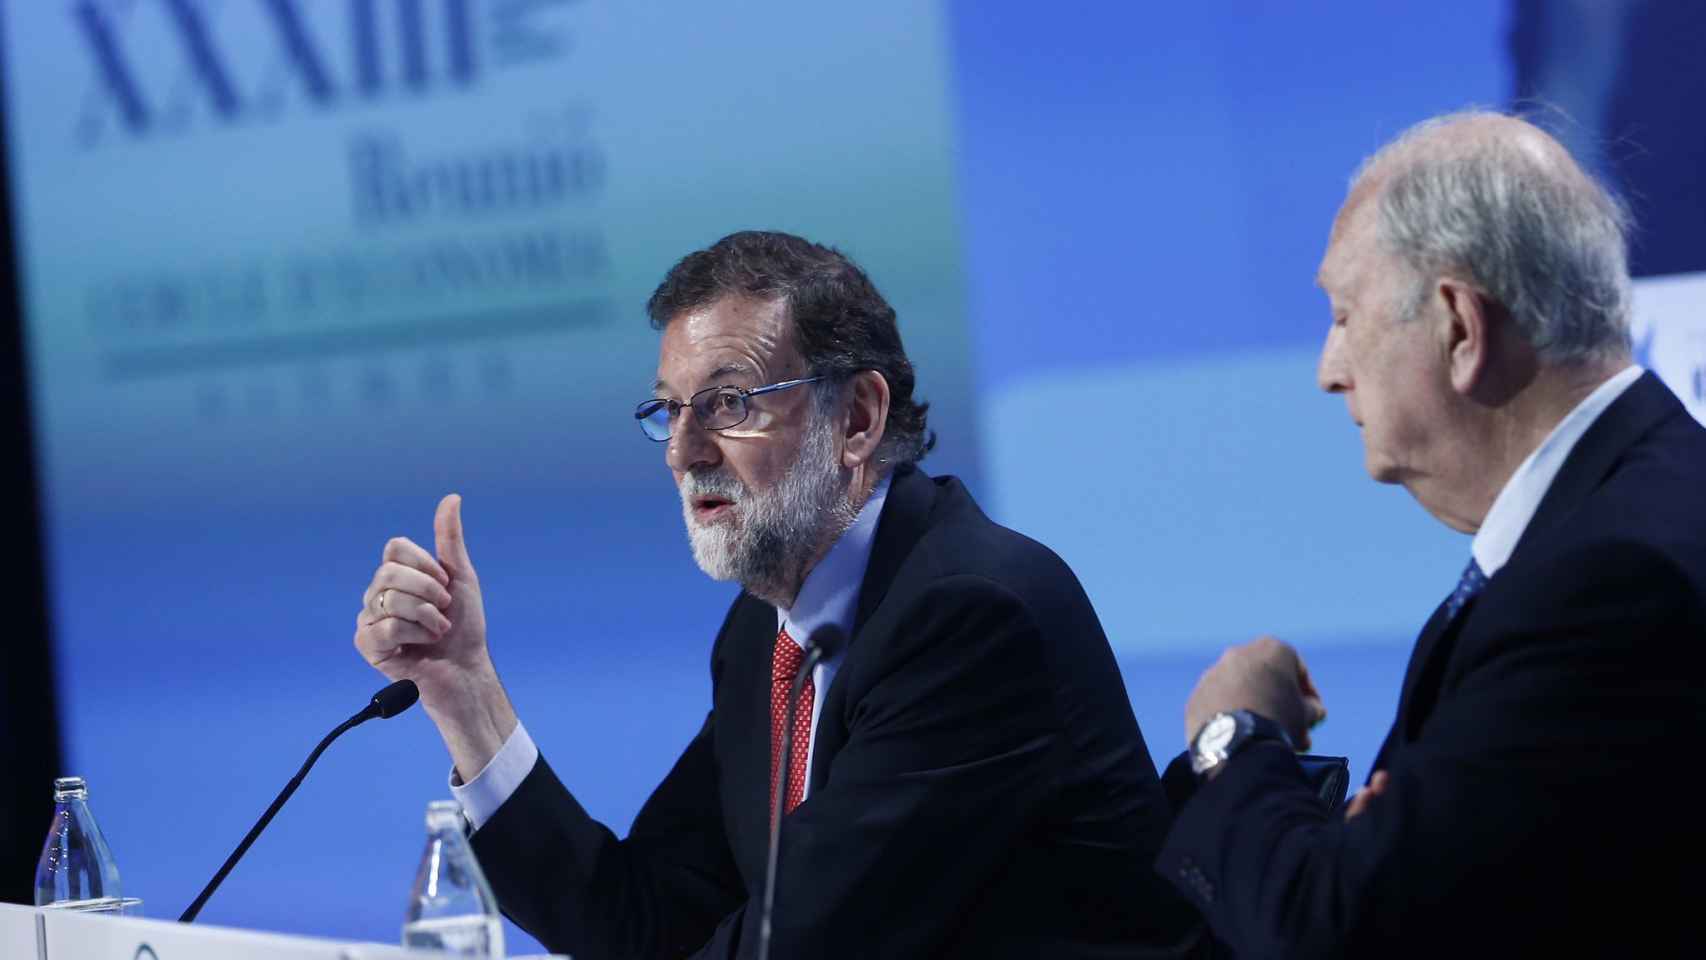 El presidente del Gobierno, Mariano Rajoy, en las jornadas del Cercle d'Economia el sábado / CG